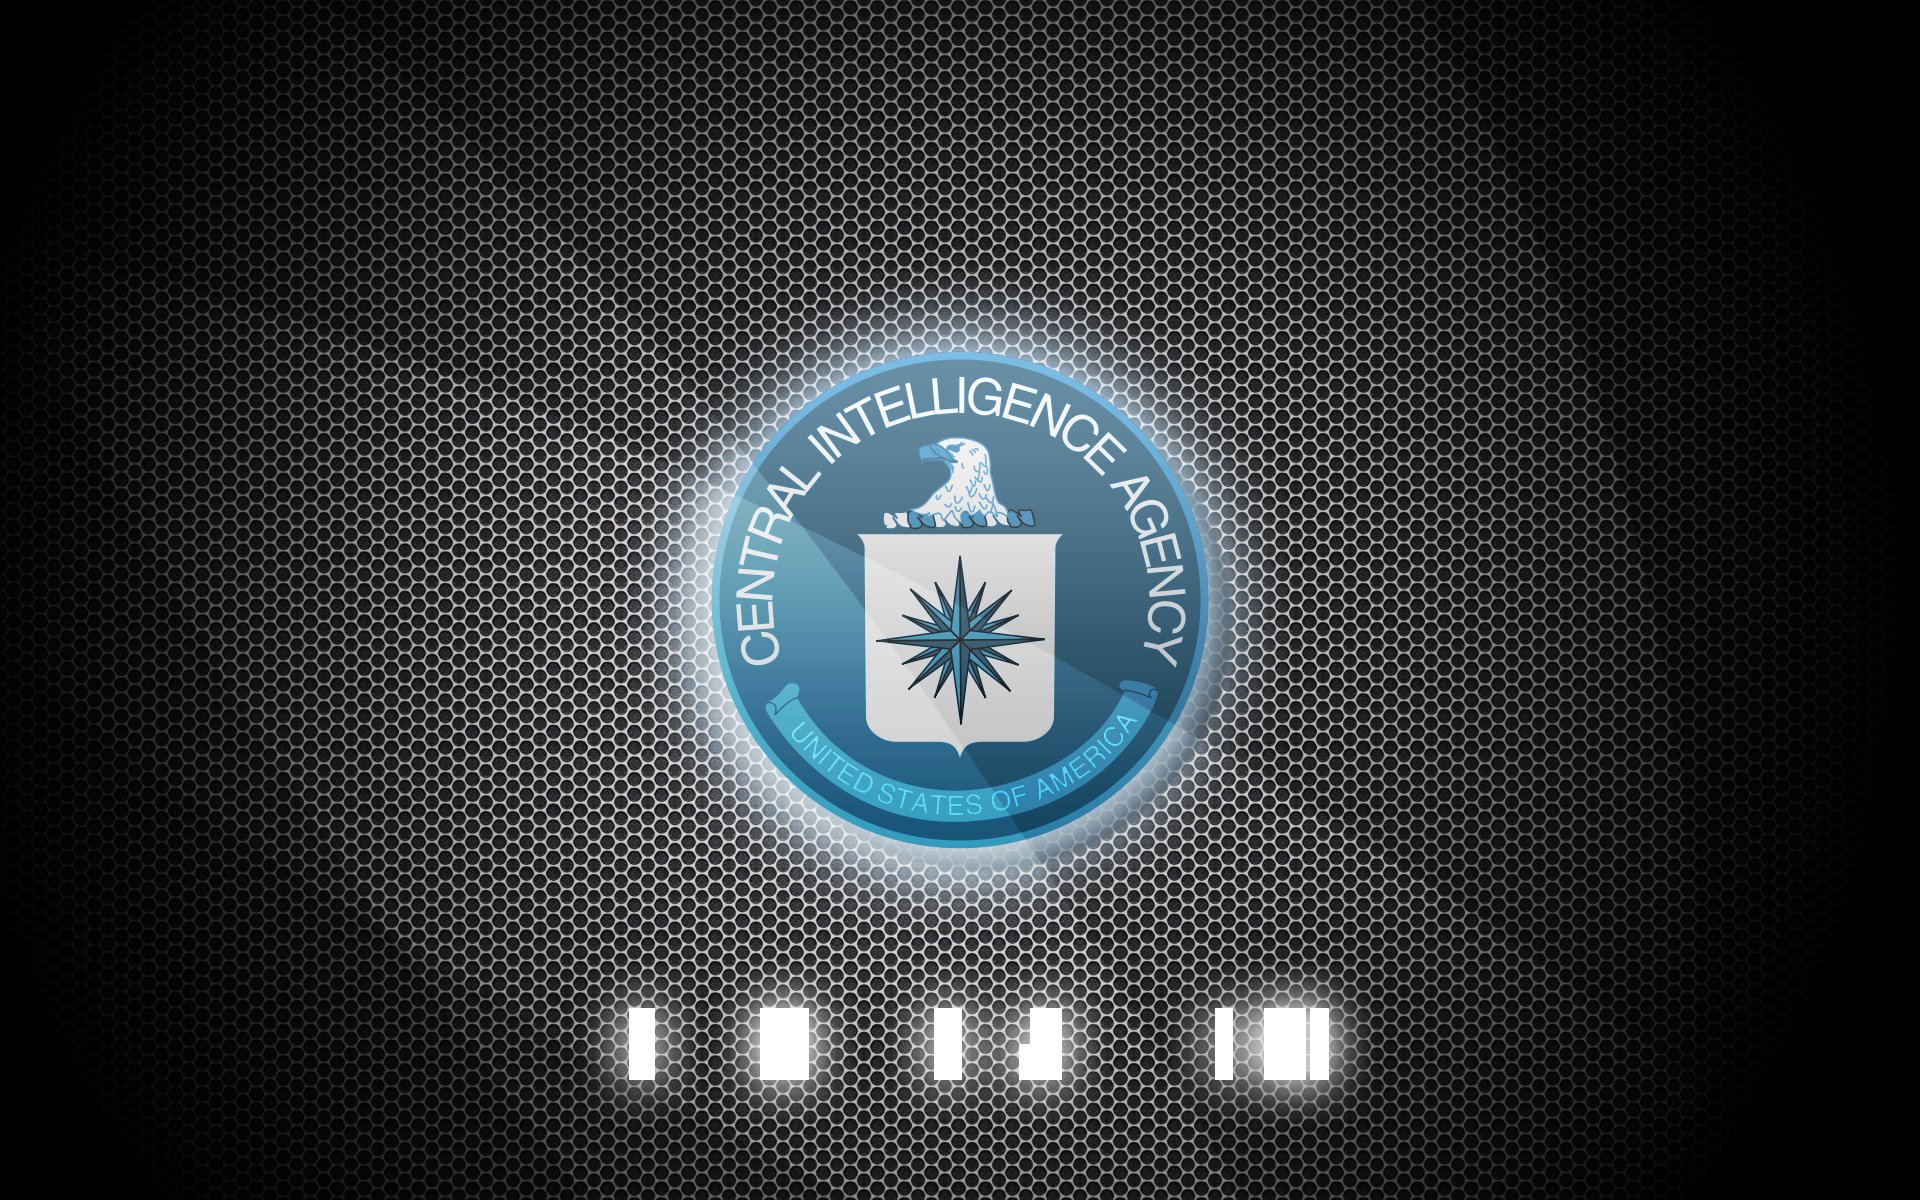 cia, Central, Intelligence, Agency, Crime, Usa, America, Spy, Logo Wallpape...